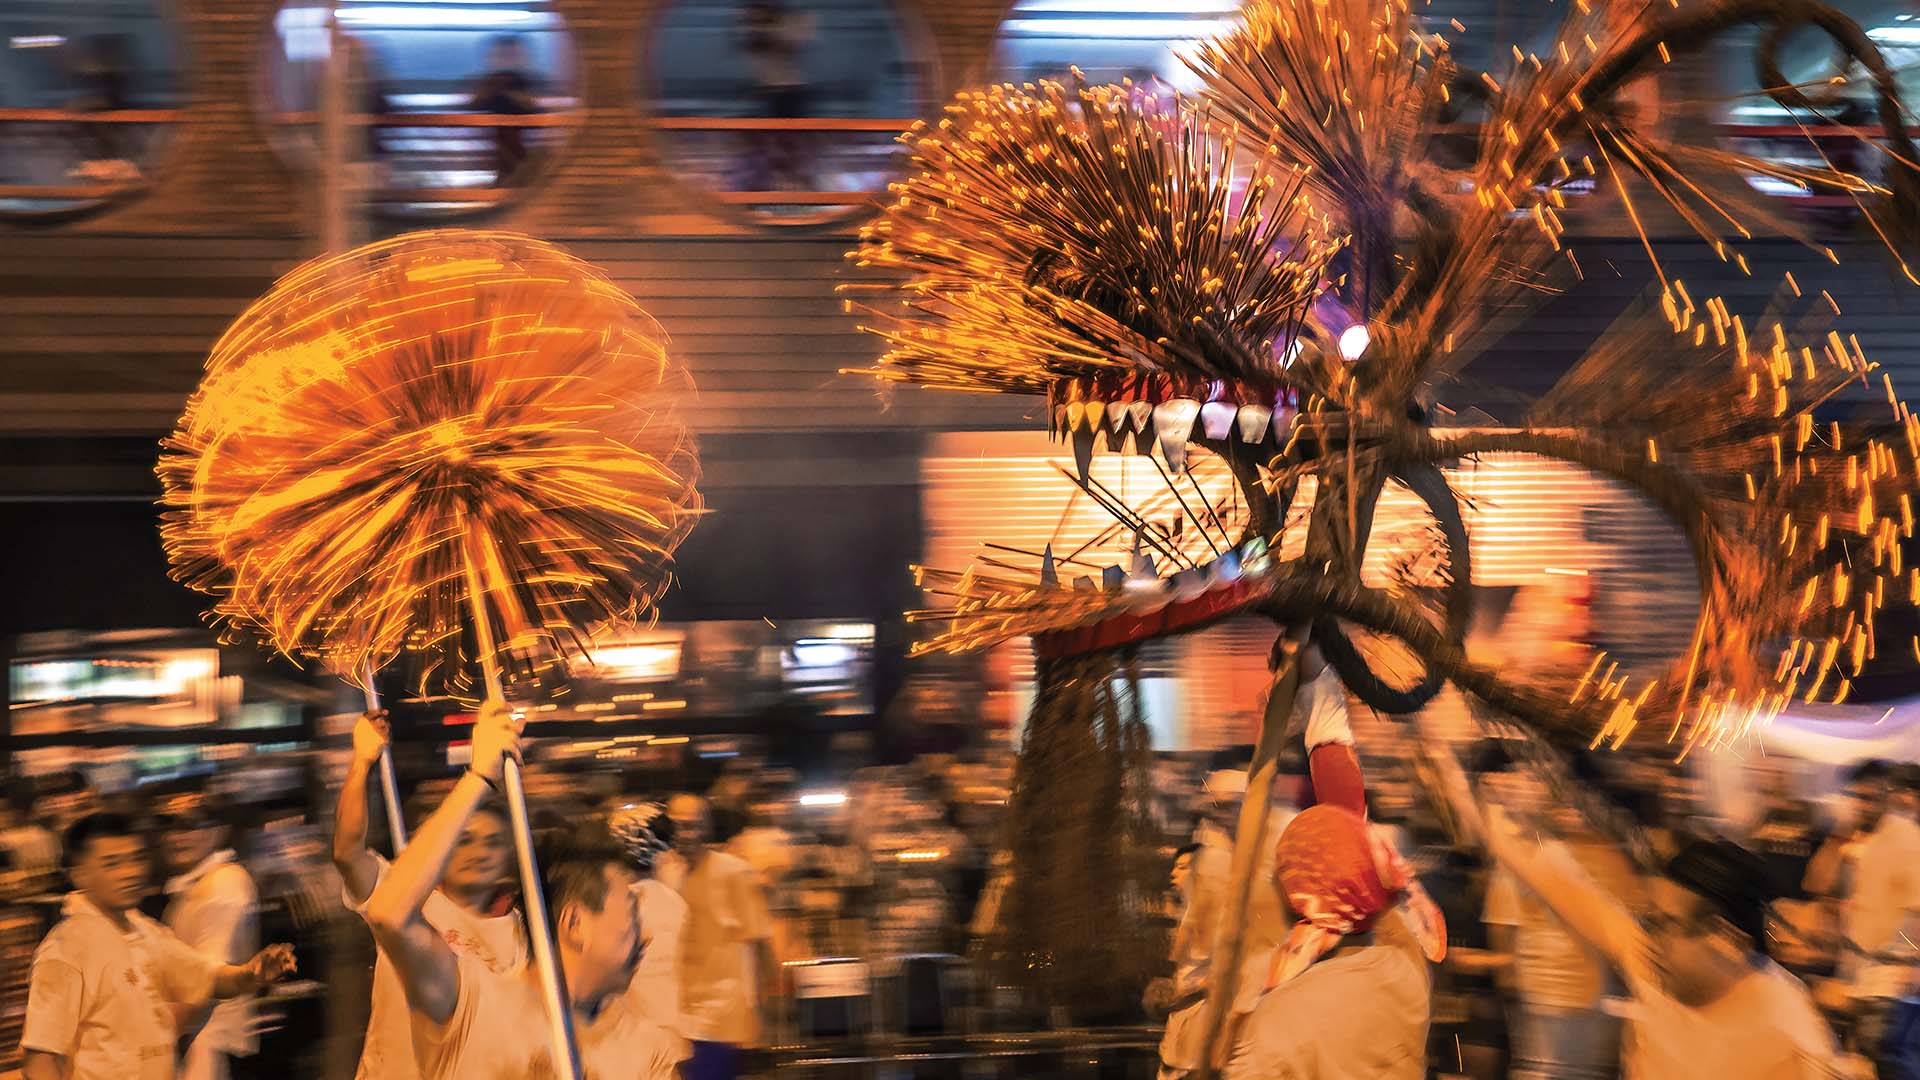 5 Fun Facts about the Tai Hang Fire Dragon Dance | Hong Kong Tourism Board